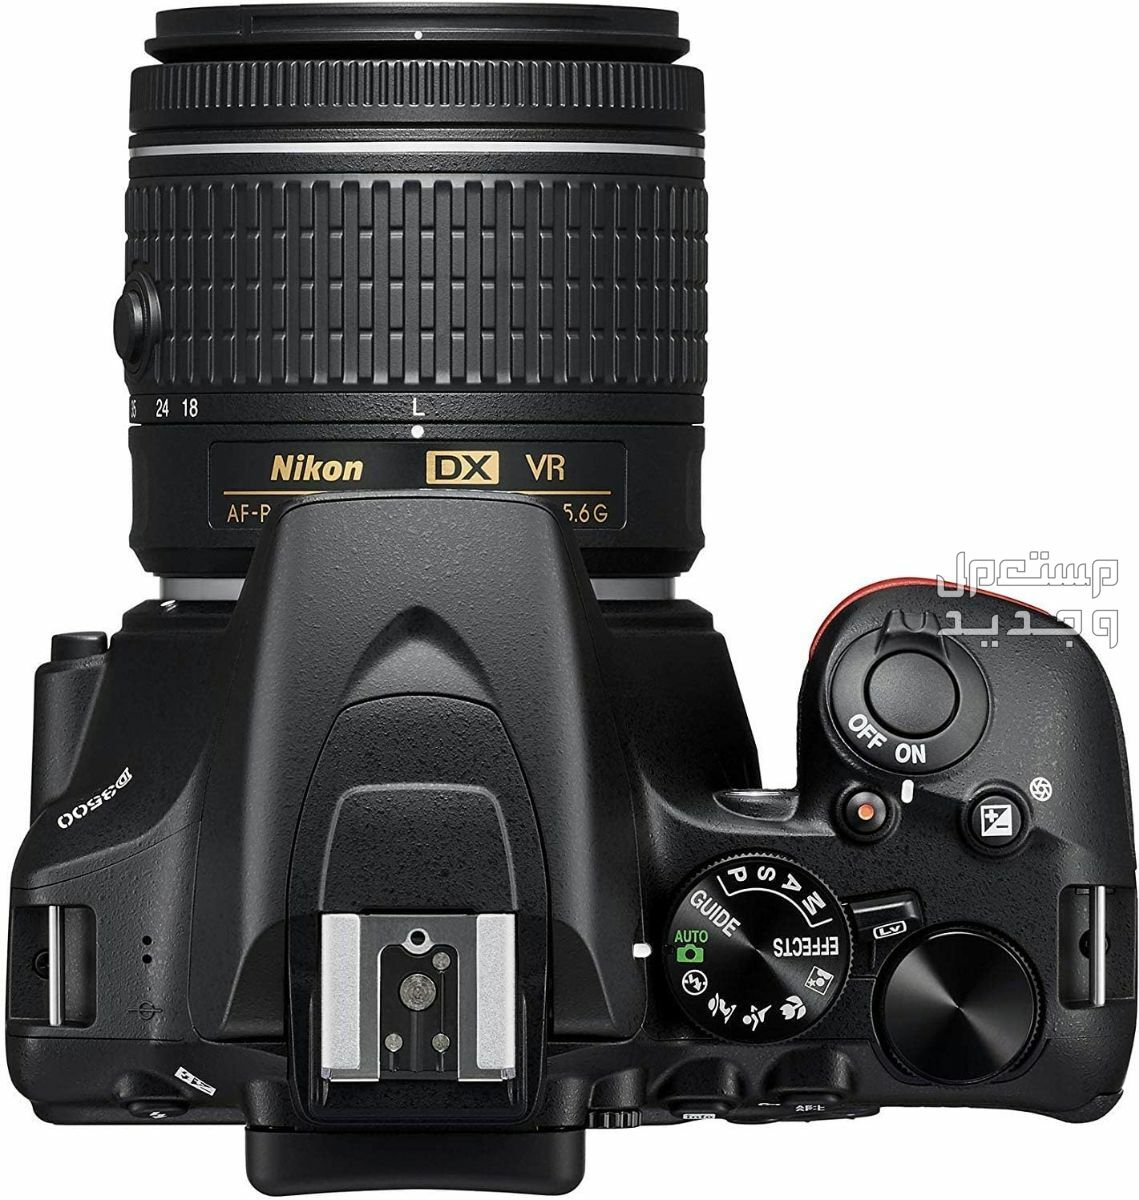 10 كاميرات تصوير ماركات عالمية بأسعار رخيصة في الكويت سعر كاميرا Nikon D3500